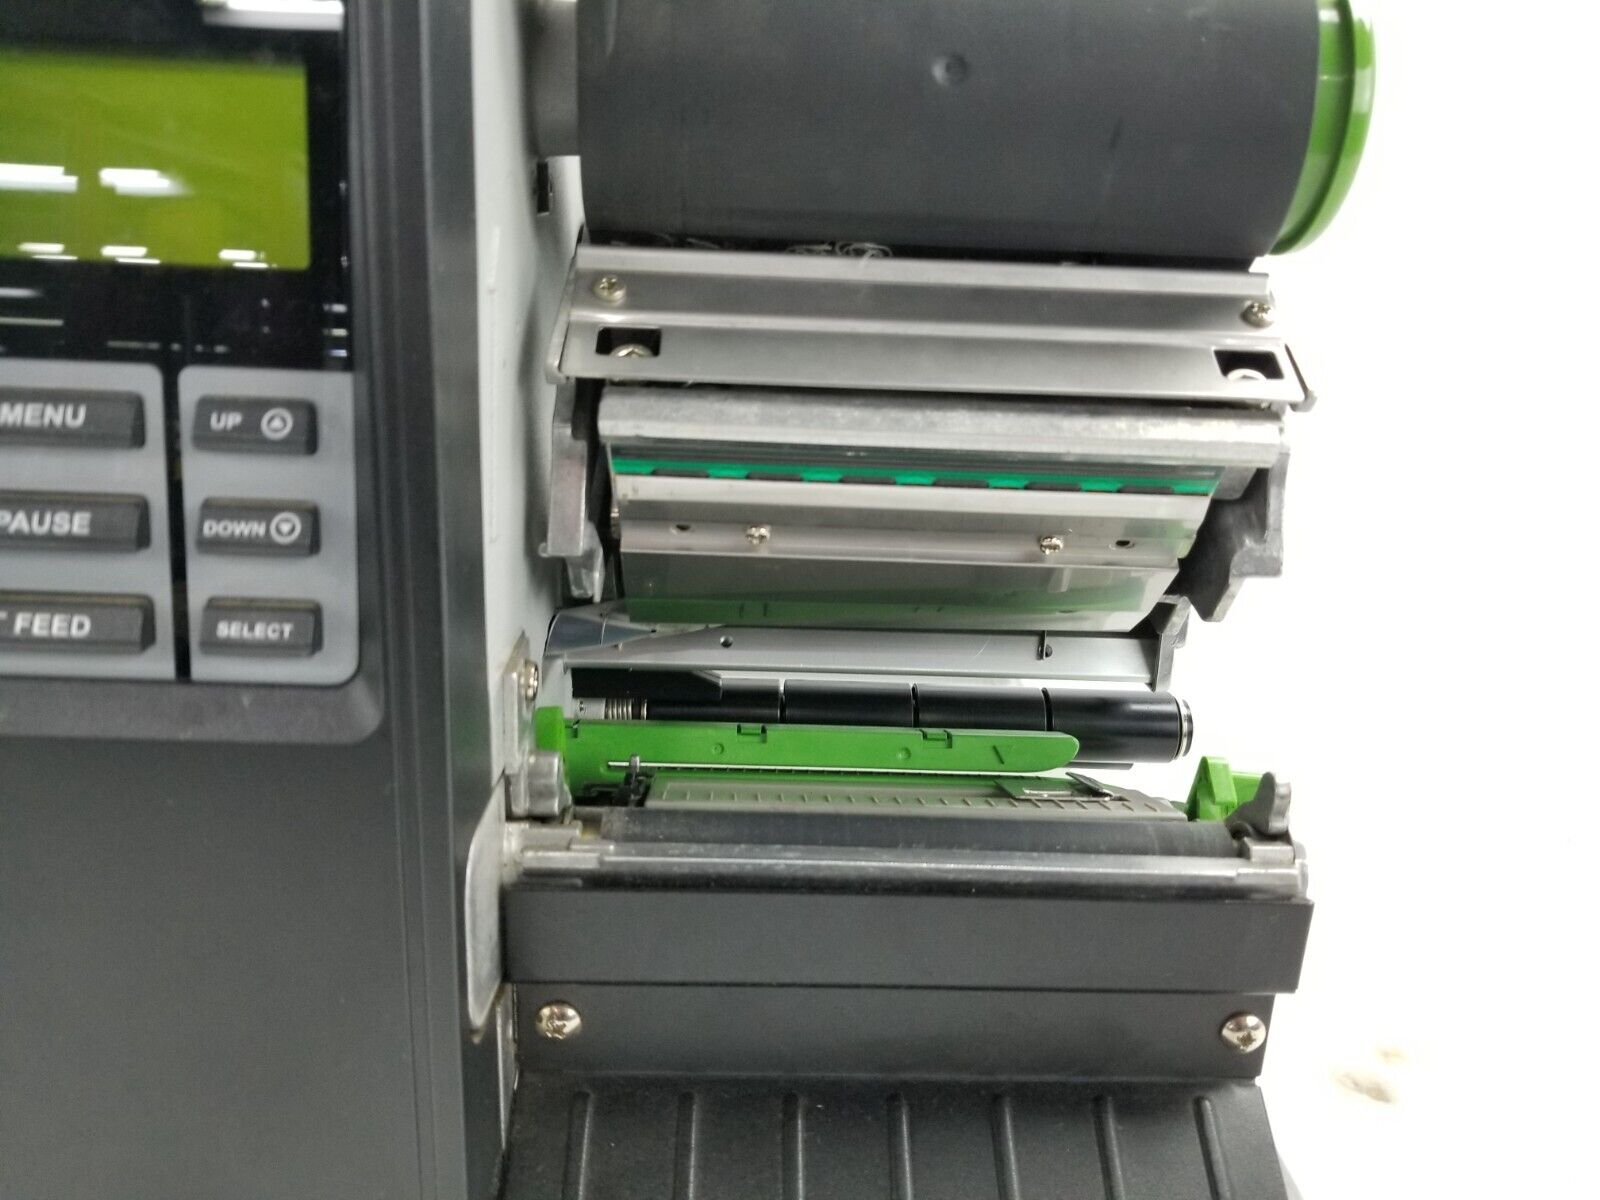 CUB CB-824i 203dpi Thermal Transfer Printer Parts or Repair Paper Jams